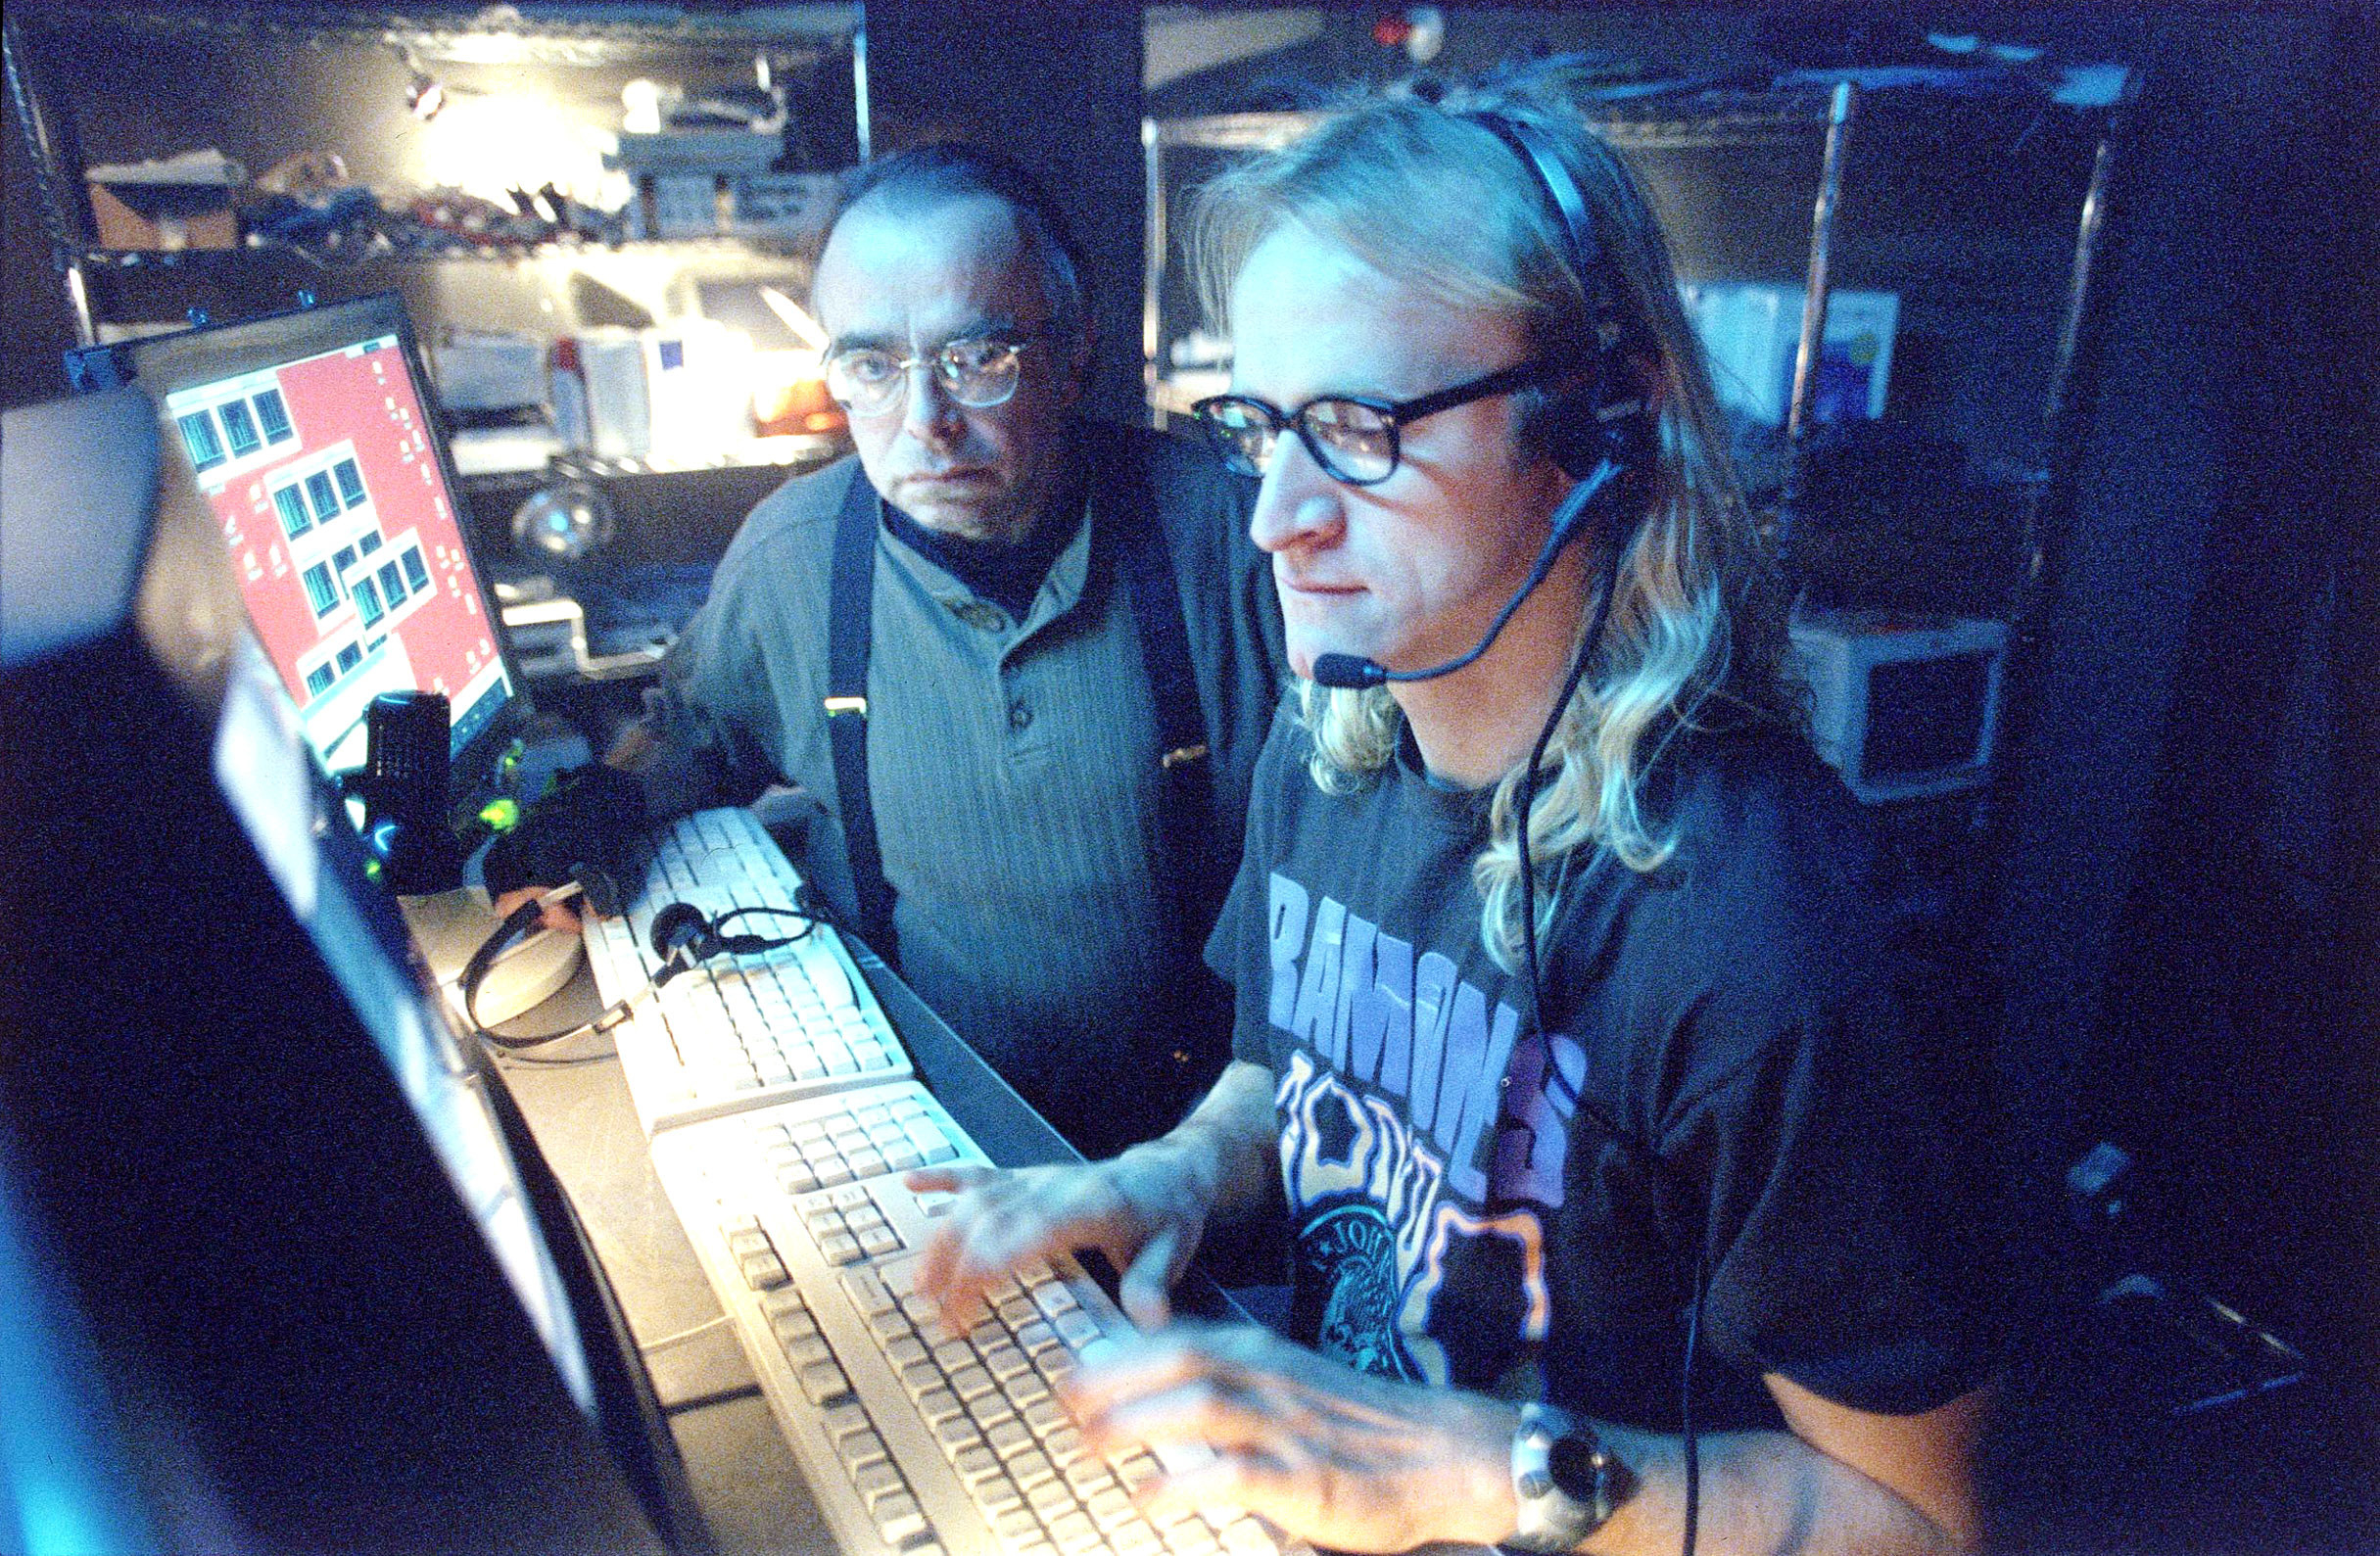 Melvin and Richard at a computer